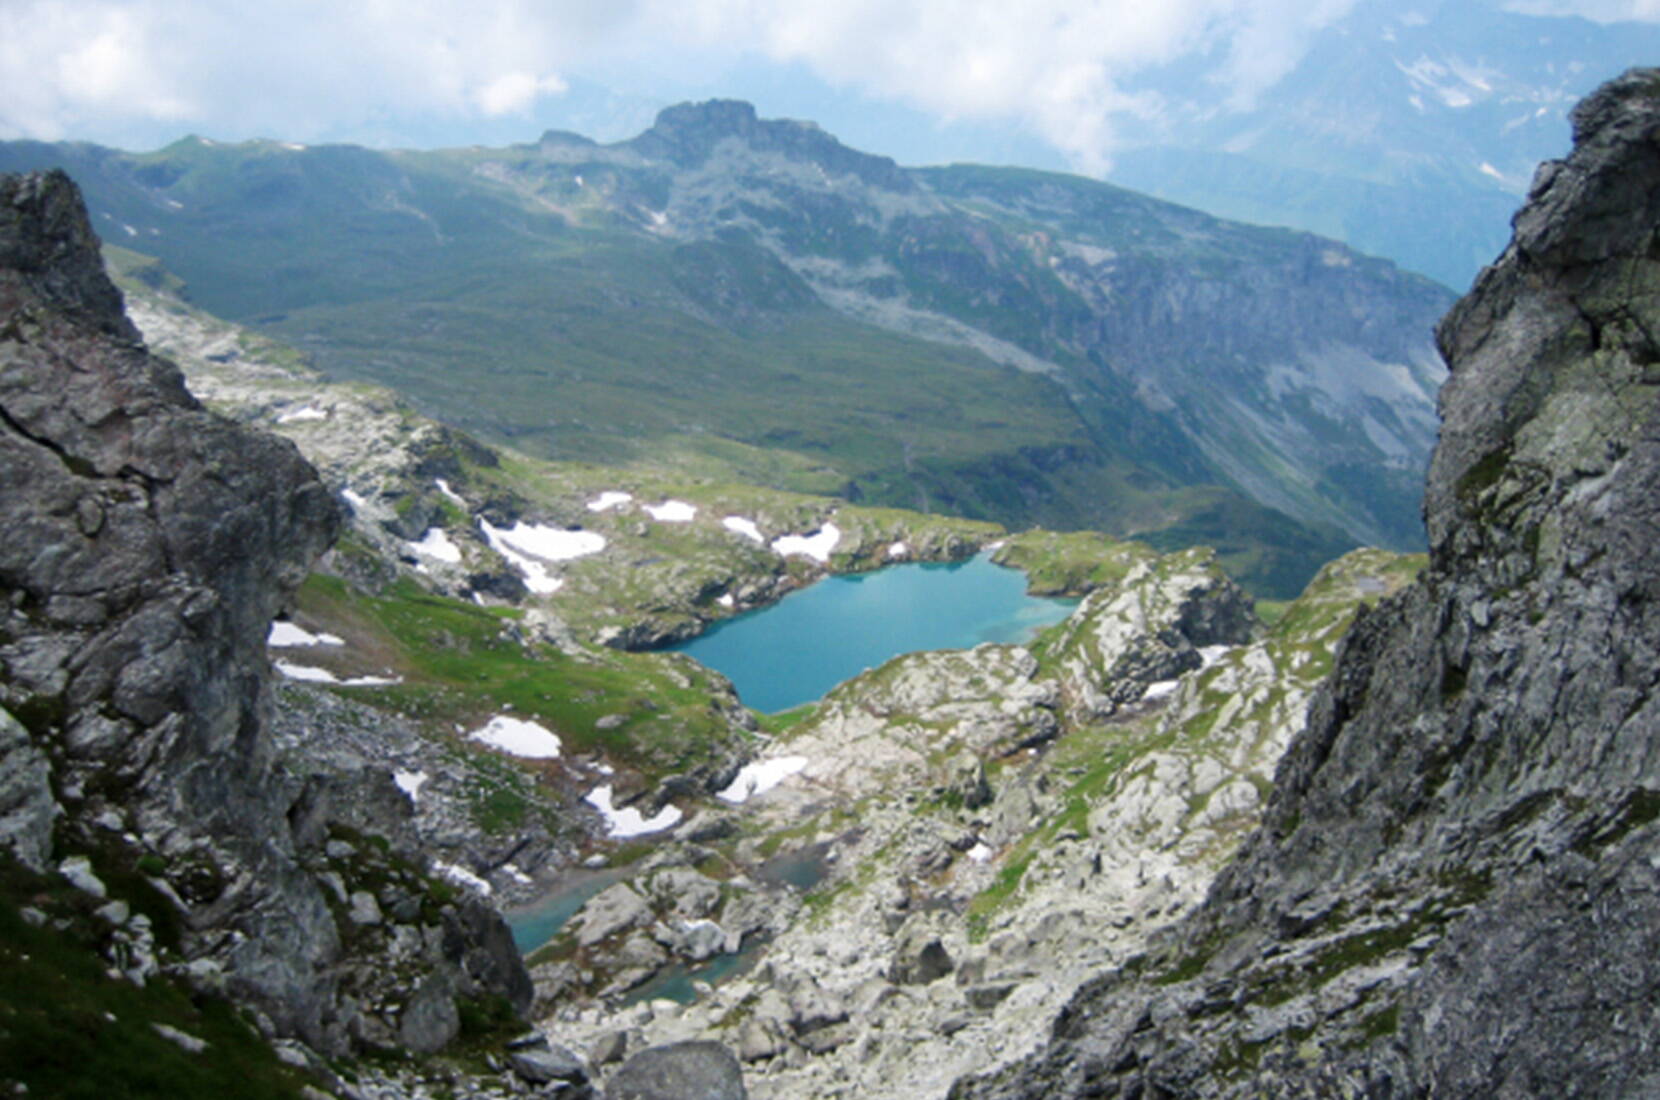 Ausflugsziele Ostschweiz - Familienausflug Leglerhütte. Die Laufzeit ab der Mettmeralp beträgt rund 2 1/2 Stunden. Nach einer einfachen und gemütlichen Wanderung präsentiert sich dir eine unberührte Naturlandschaft mit klaren Bergseen, Aussicht auf 192 Bergwipfel und eine gemütliche, moderne Bergunterkunft.